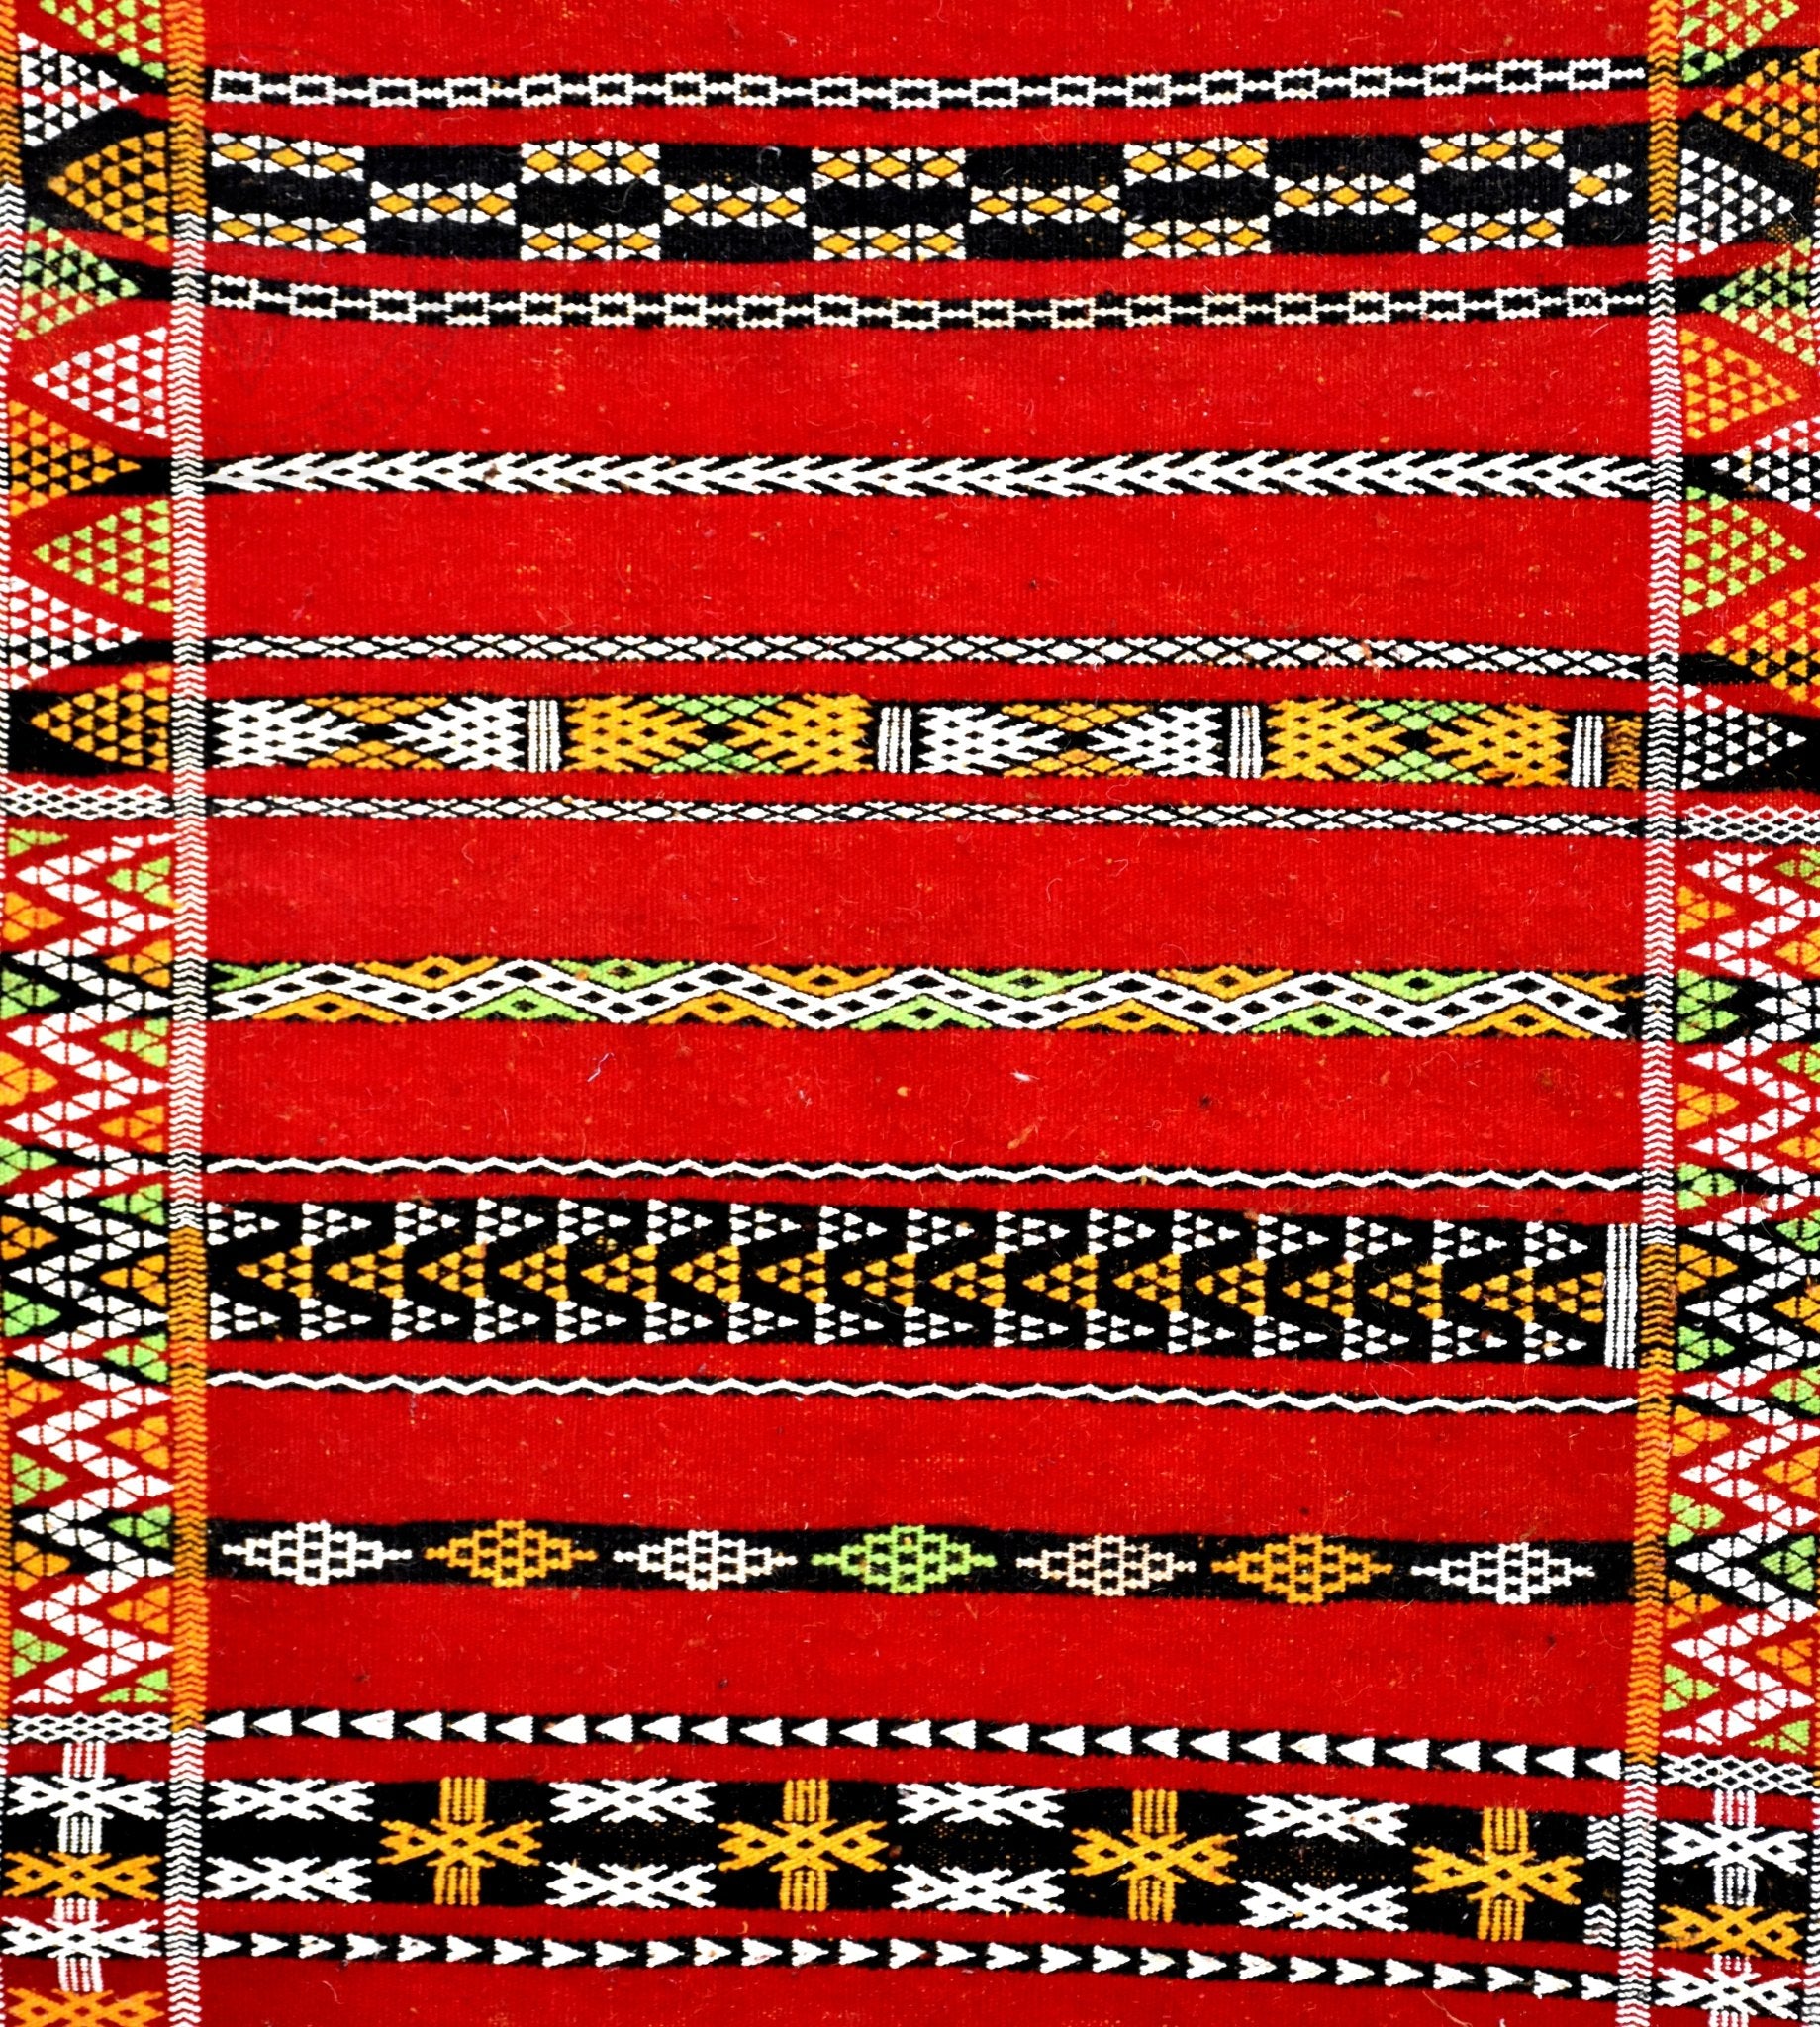 Flatweave Kilim Hanbal Moroccan runner rug - 2.8 x 17.56 ft / 85 x 535 cm - Berbers Market